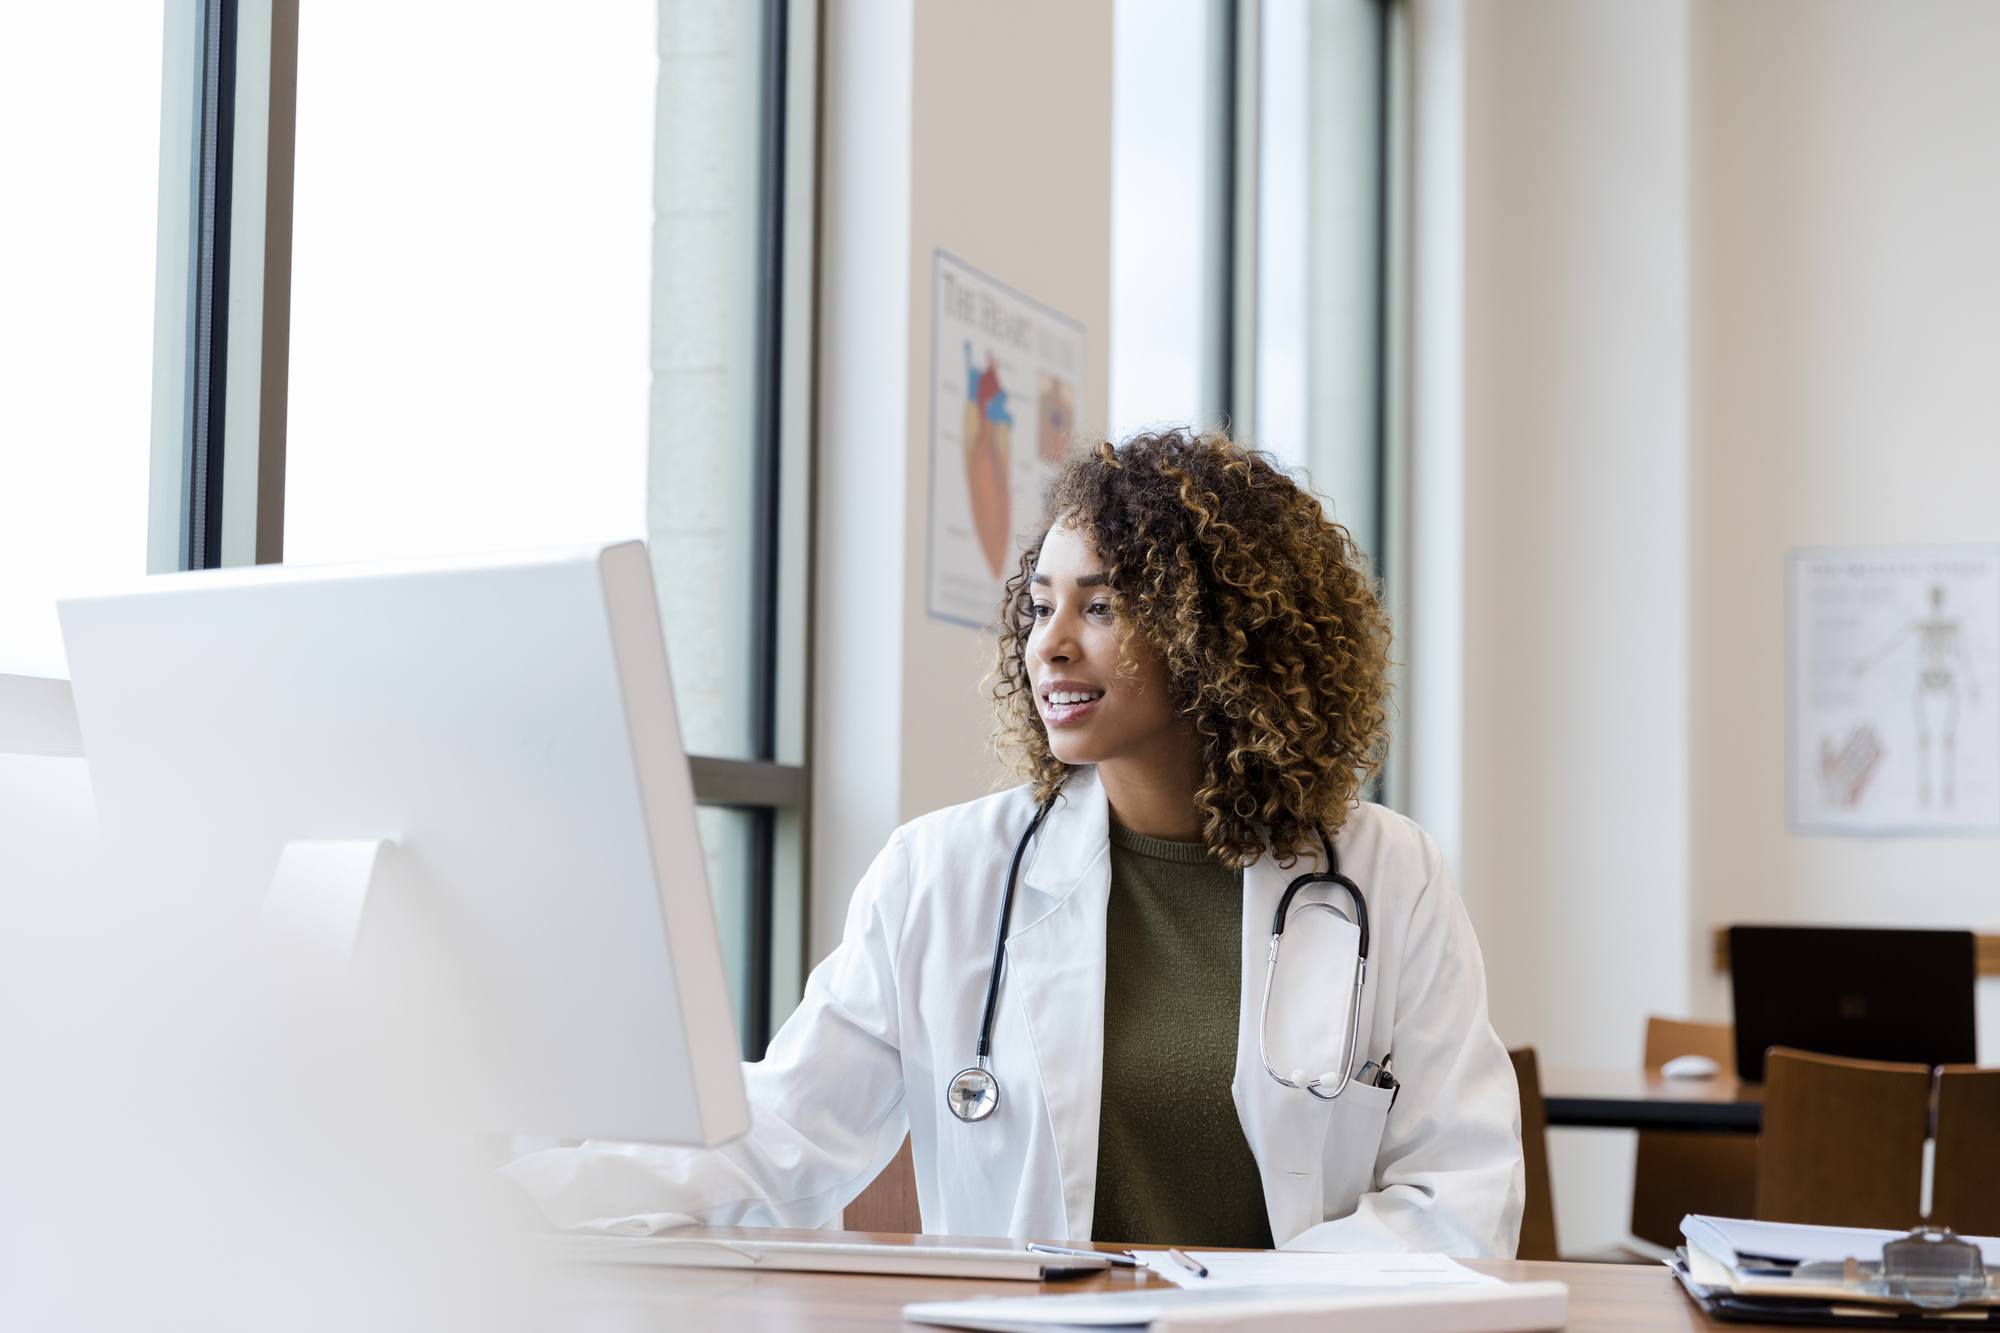 doctor reviews patient records on desktop PC